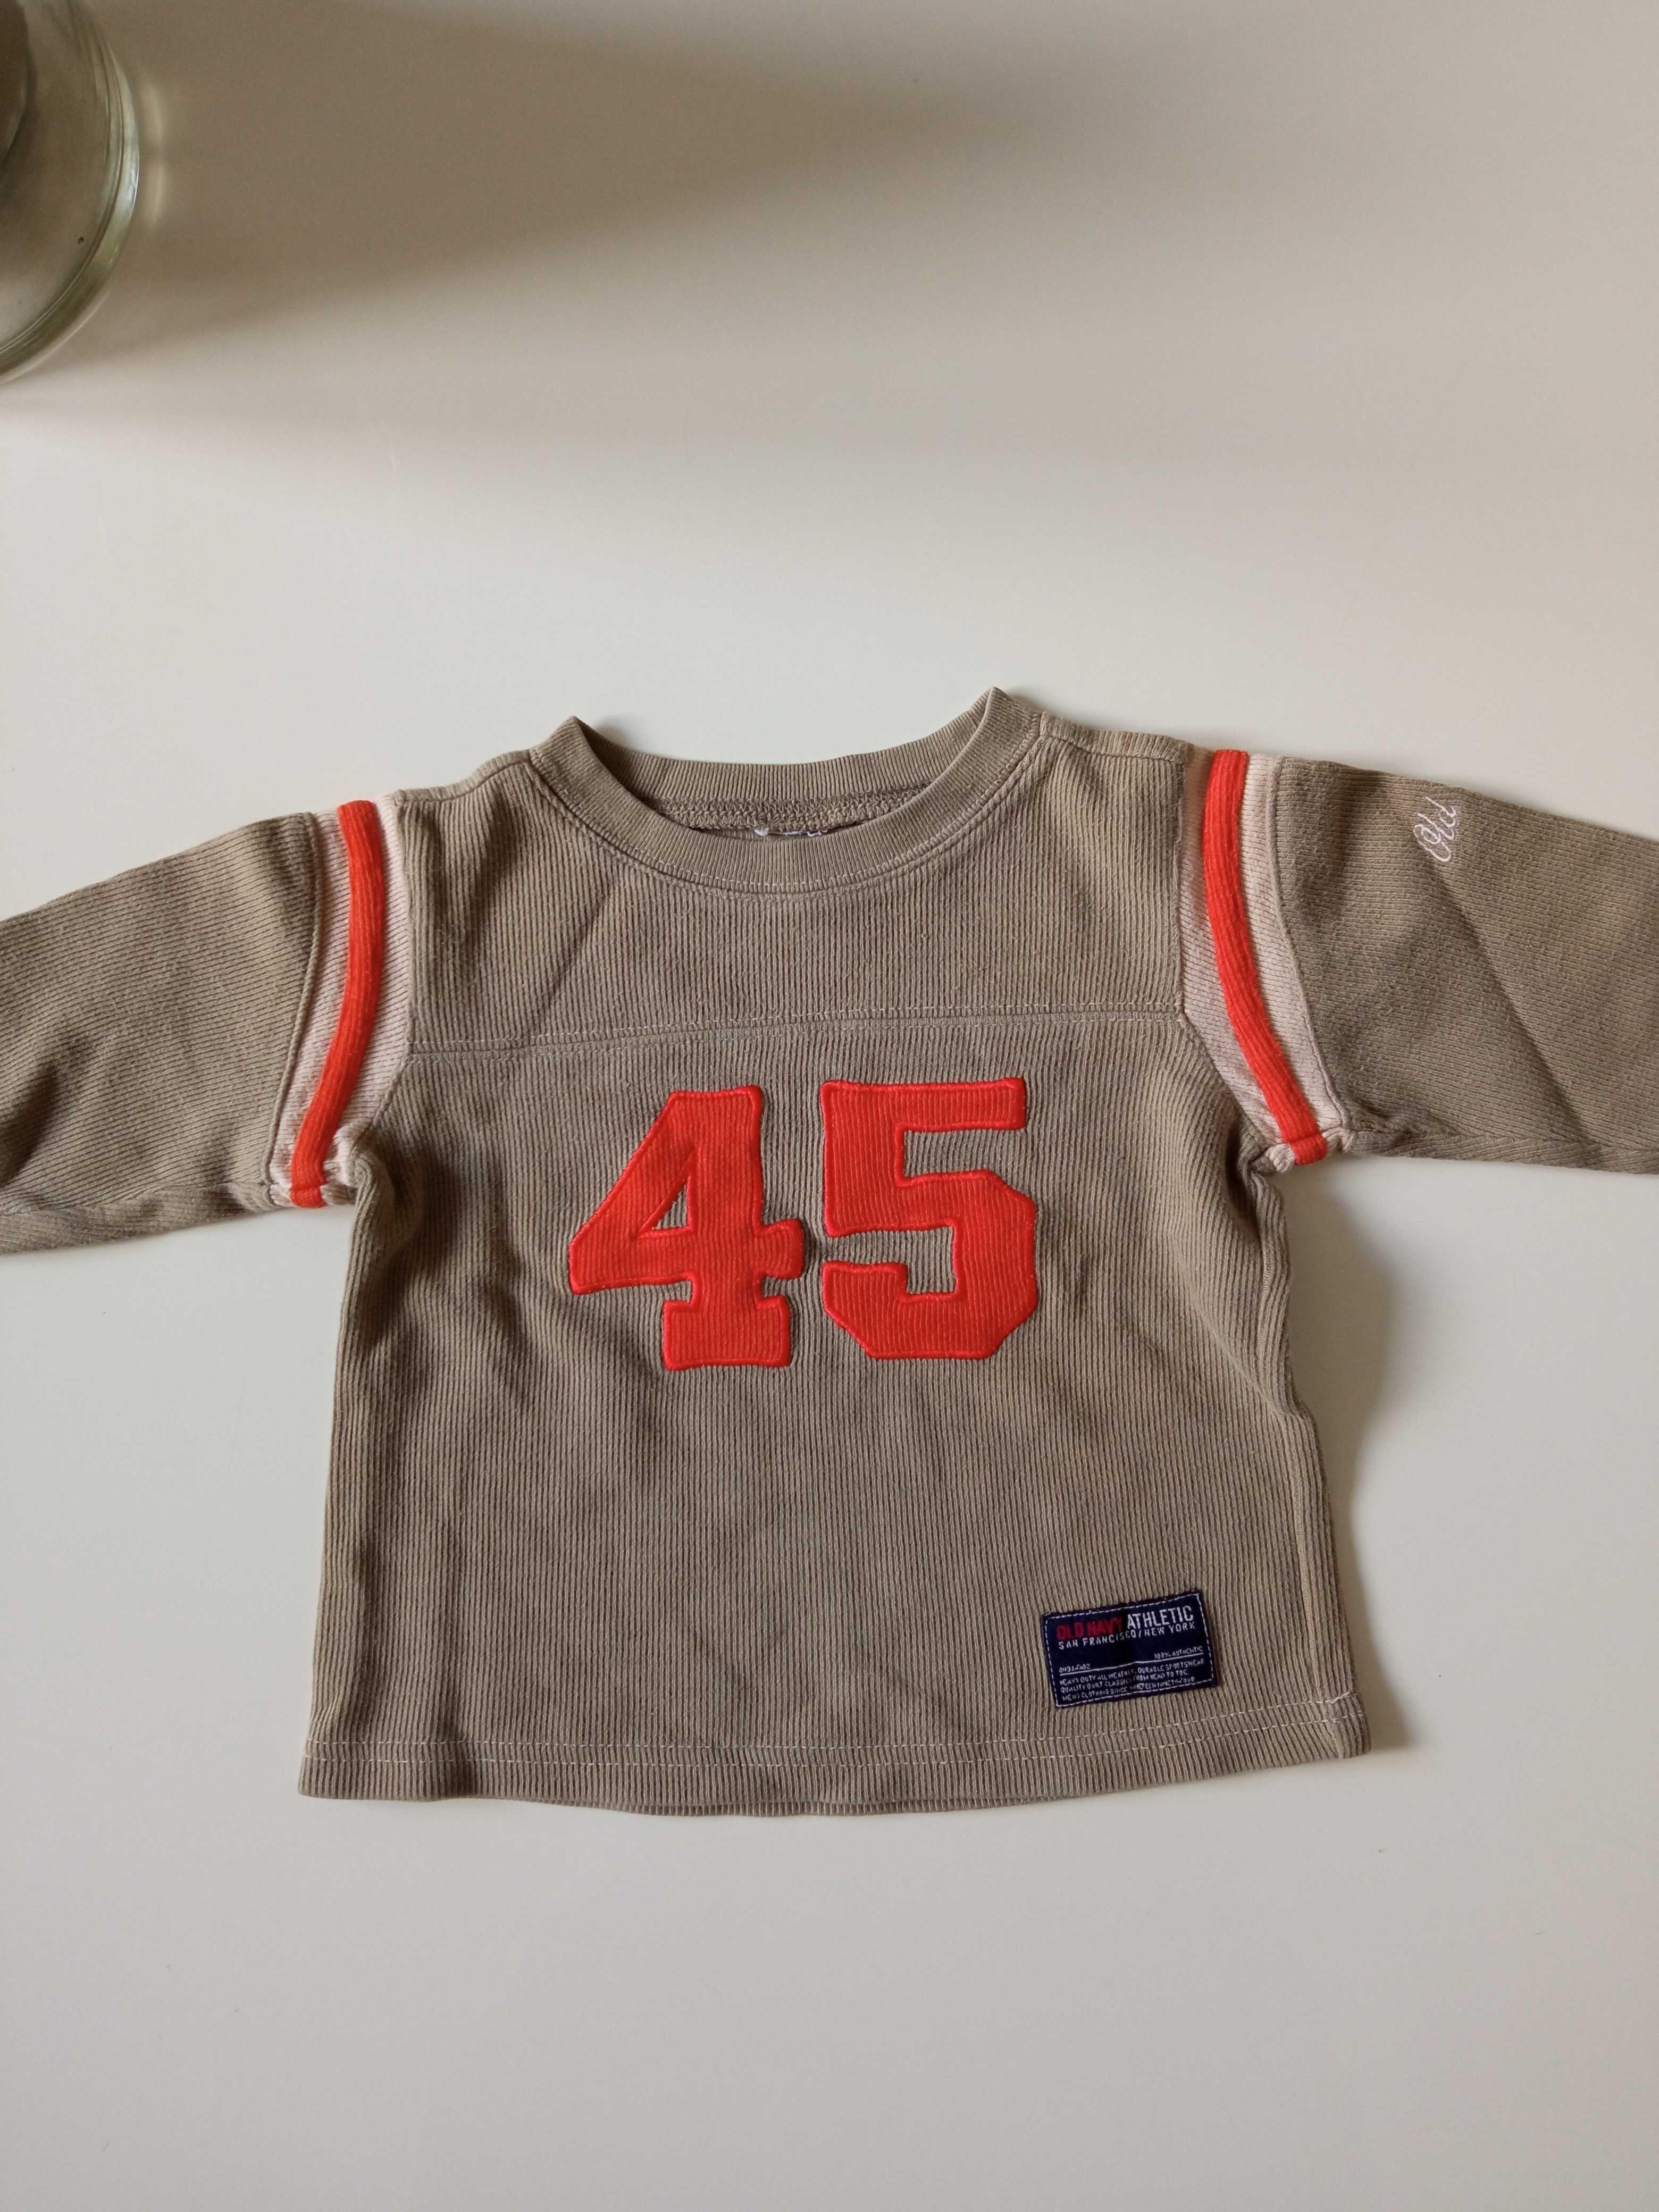 Old Navy Athletic bluza chłopięca bawełniana r 86-92